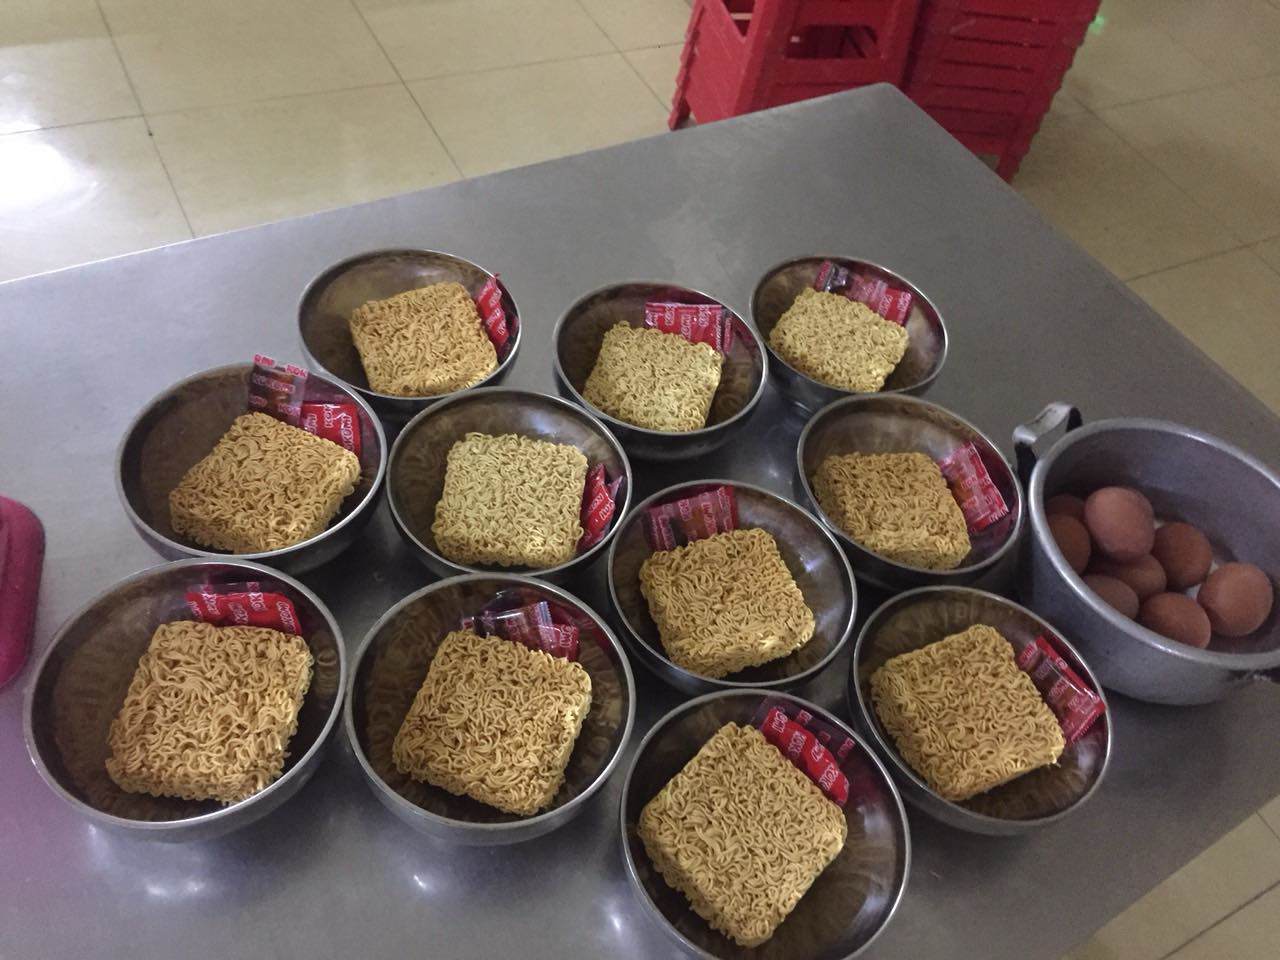 Hình ảnh bữa ăn tại trường bán trú sau khi bị tố cho học sinh ăn 2 gói mì tôm chan cơm - 5